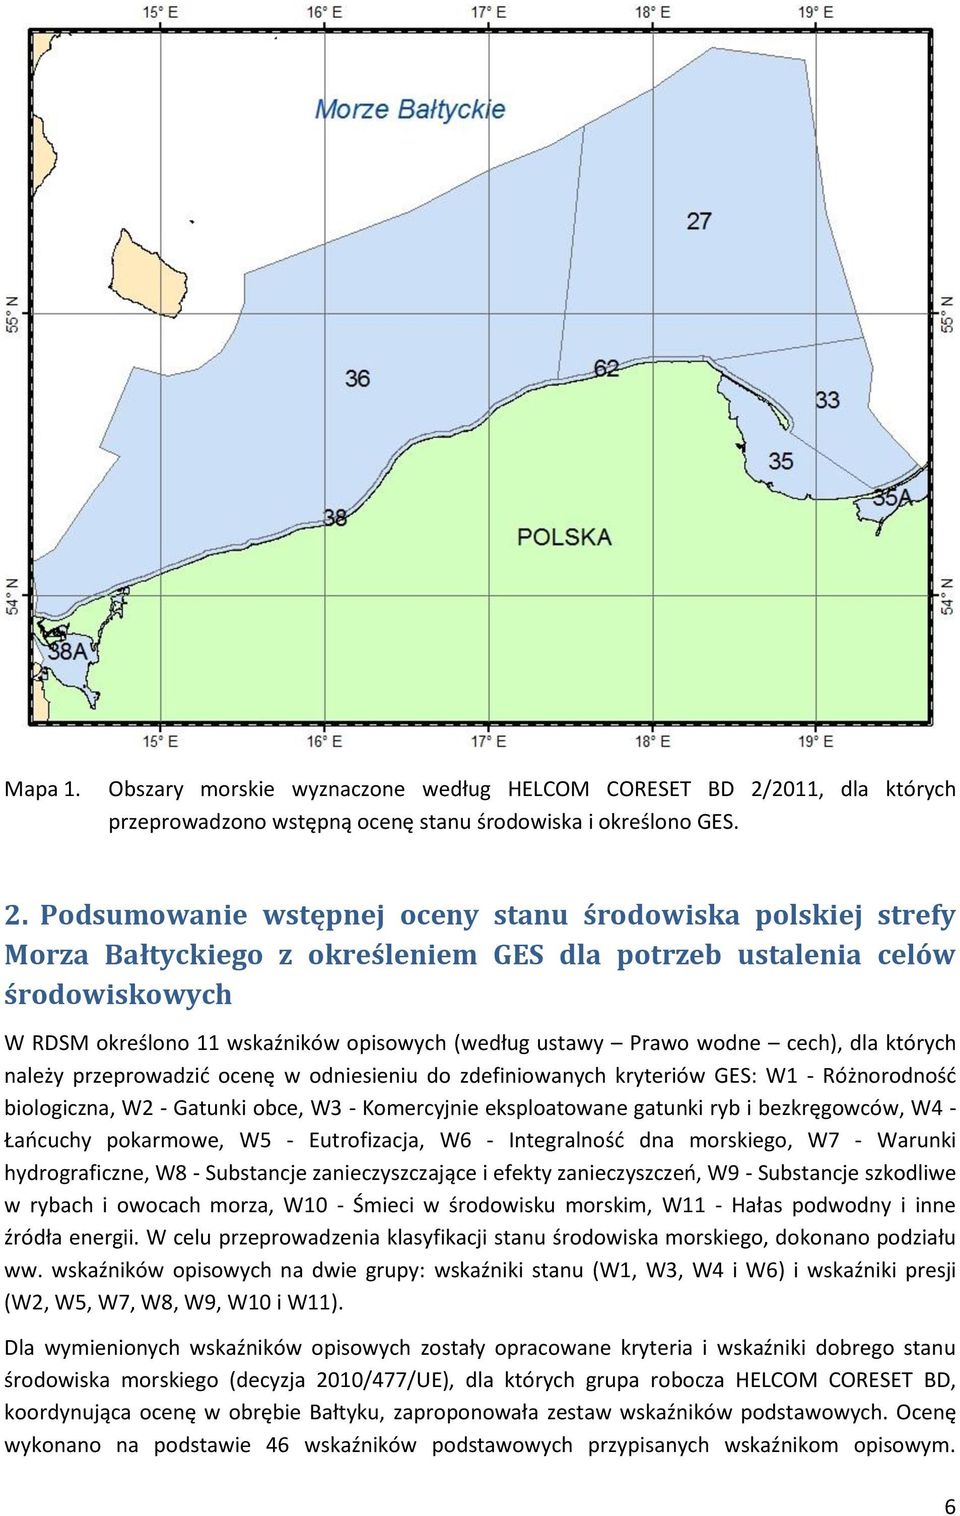 Podsumowanie wstępnej oceny stanu środowiska polskiej strefy Morza Bałtyckiego z określeniem GES dla potrzeb ustalenia celów środowiskowych W RDSM określono 11 wskaźników opisowych (według ustawy